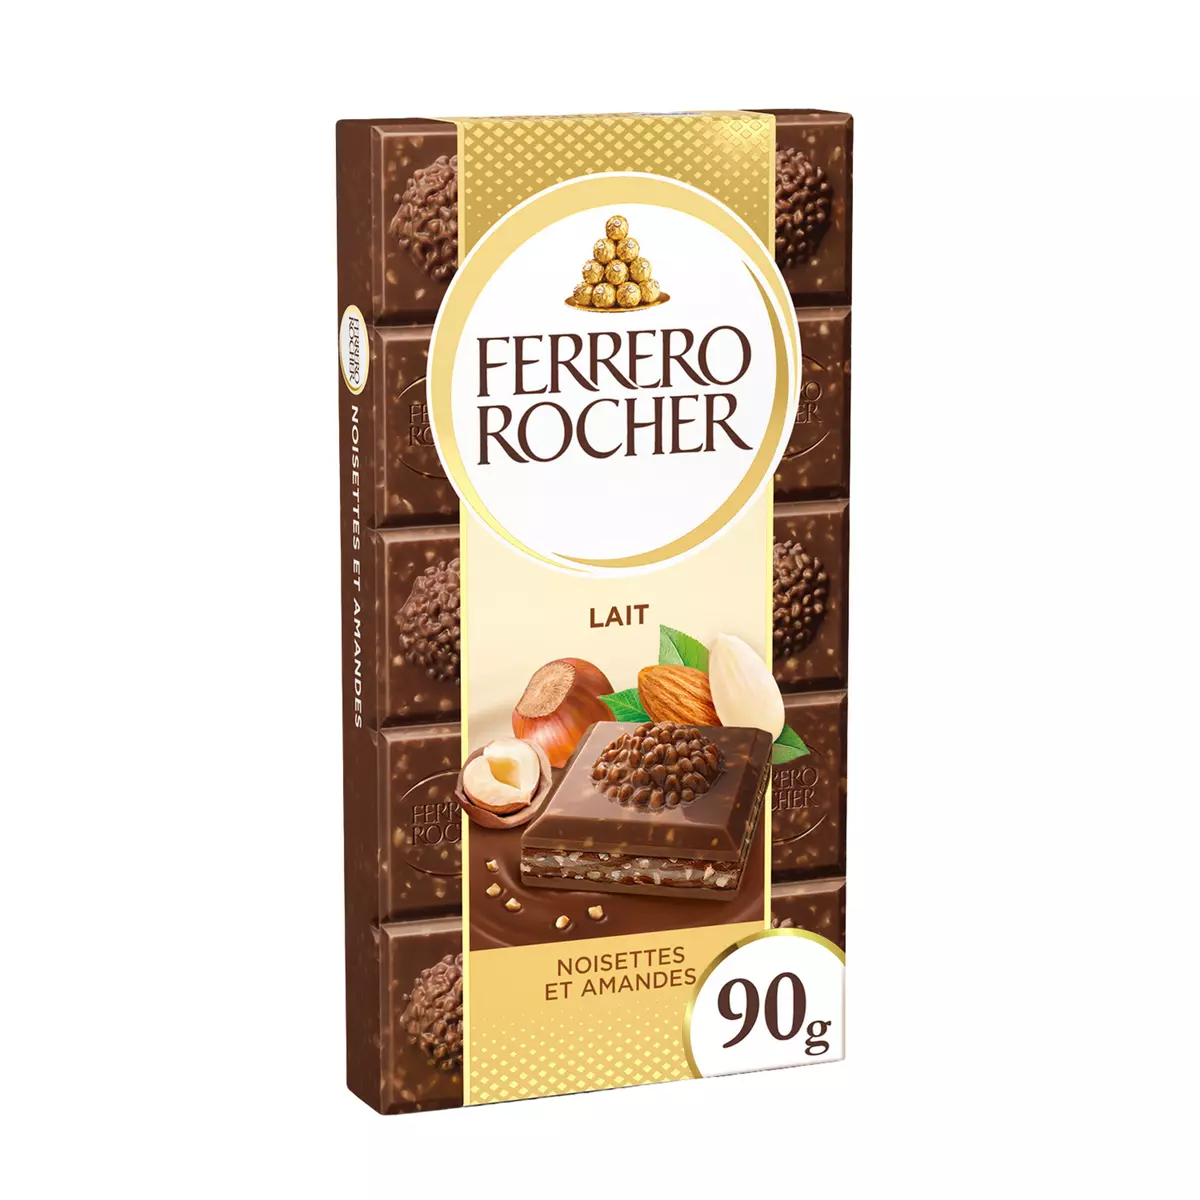 FERRERO ROCHER Tablette de chocolat au lait noisettes et amandes 90g